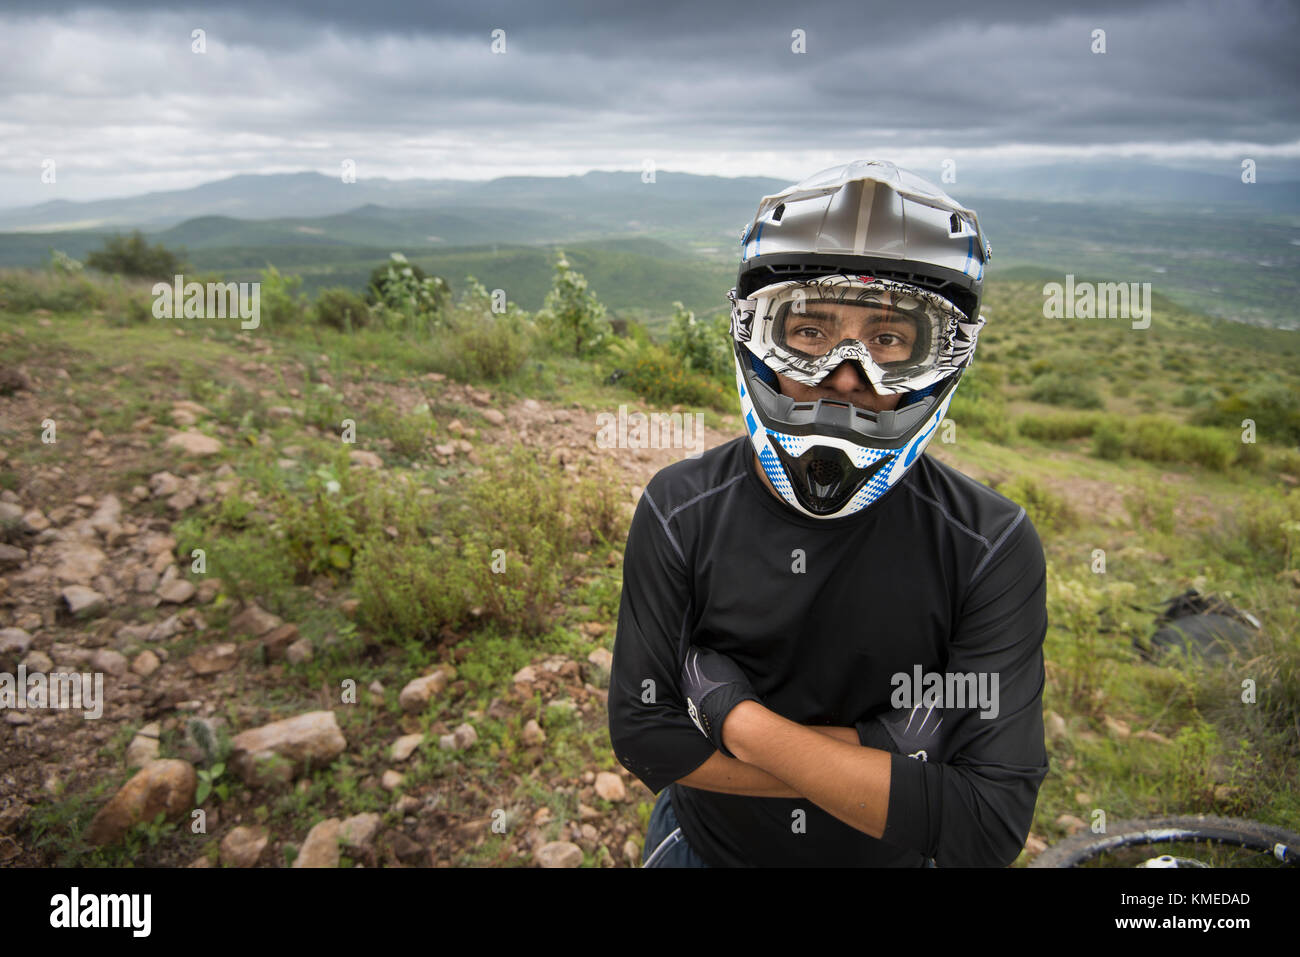 Un vélo de montagne pose pour un portrait avec son casque sur la zone à Joya Barreta de Queretaro, Mexique. Banque D'Images